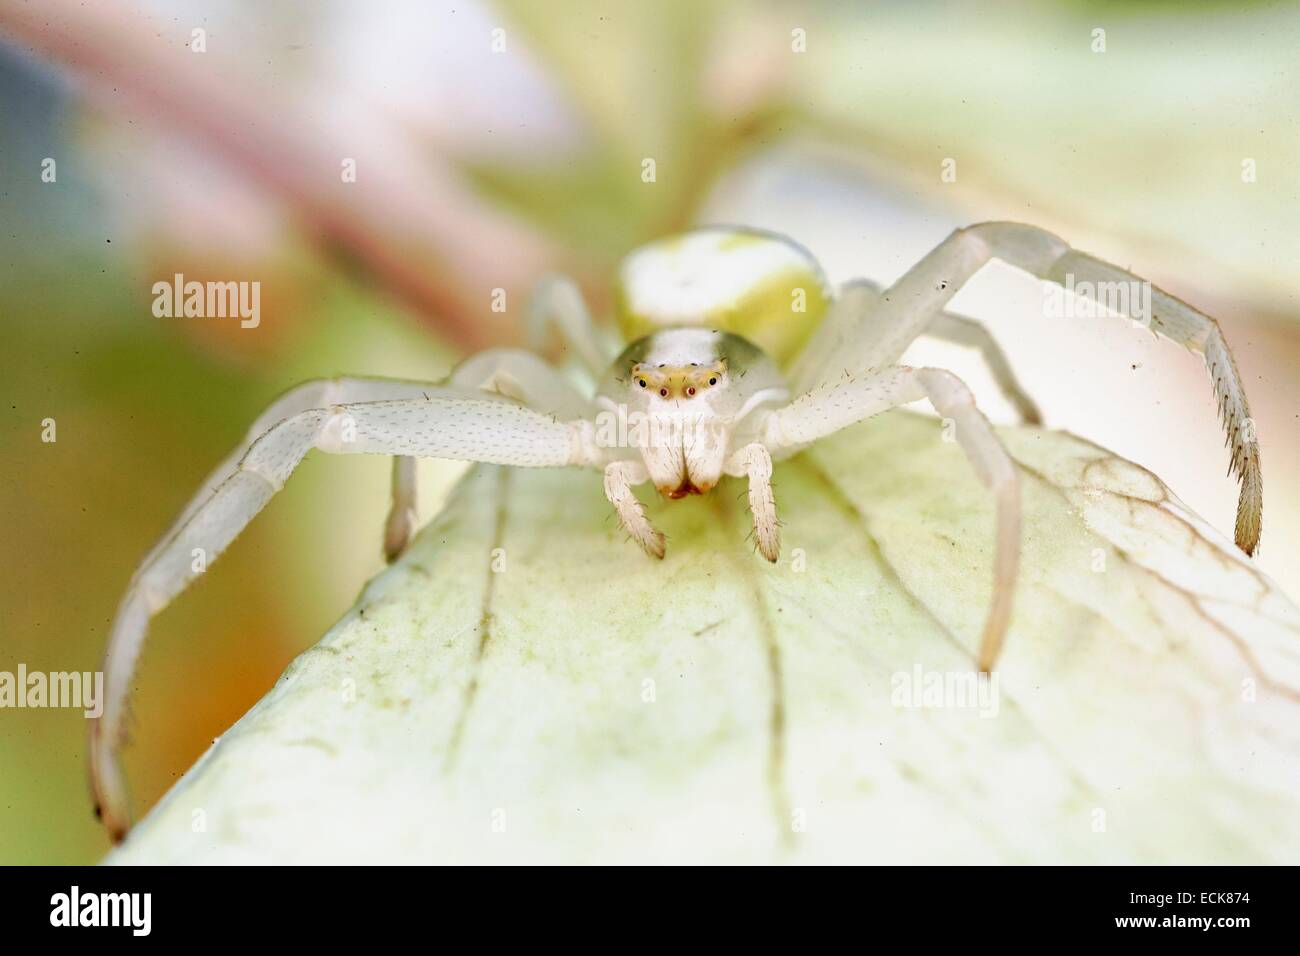 France, Poitiers, Thomisidae, la verge d'araignée crabe araignée crabe ou de fleurs (Misumena vatia), forme blanche Banque D'Images